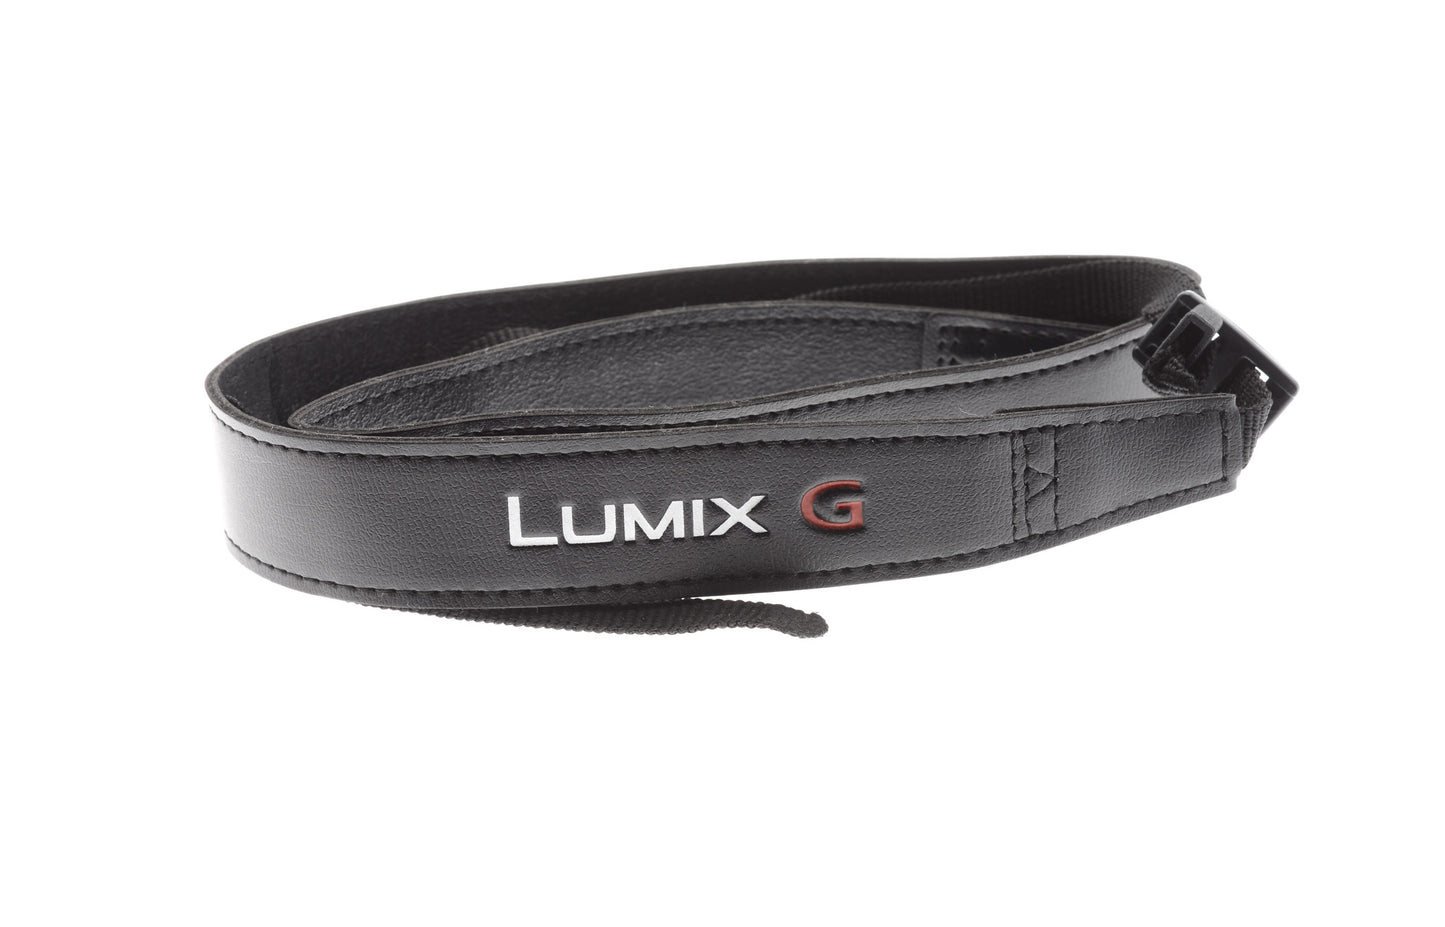 Panasonic Lumix G Strap - Accessory